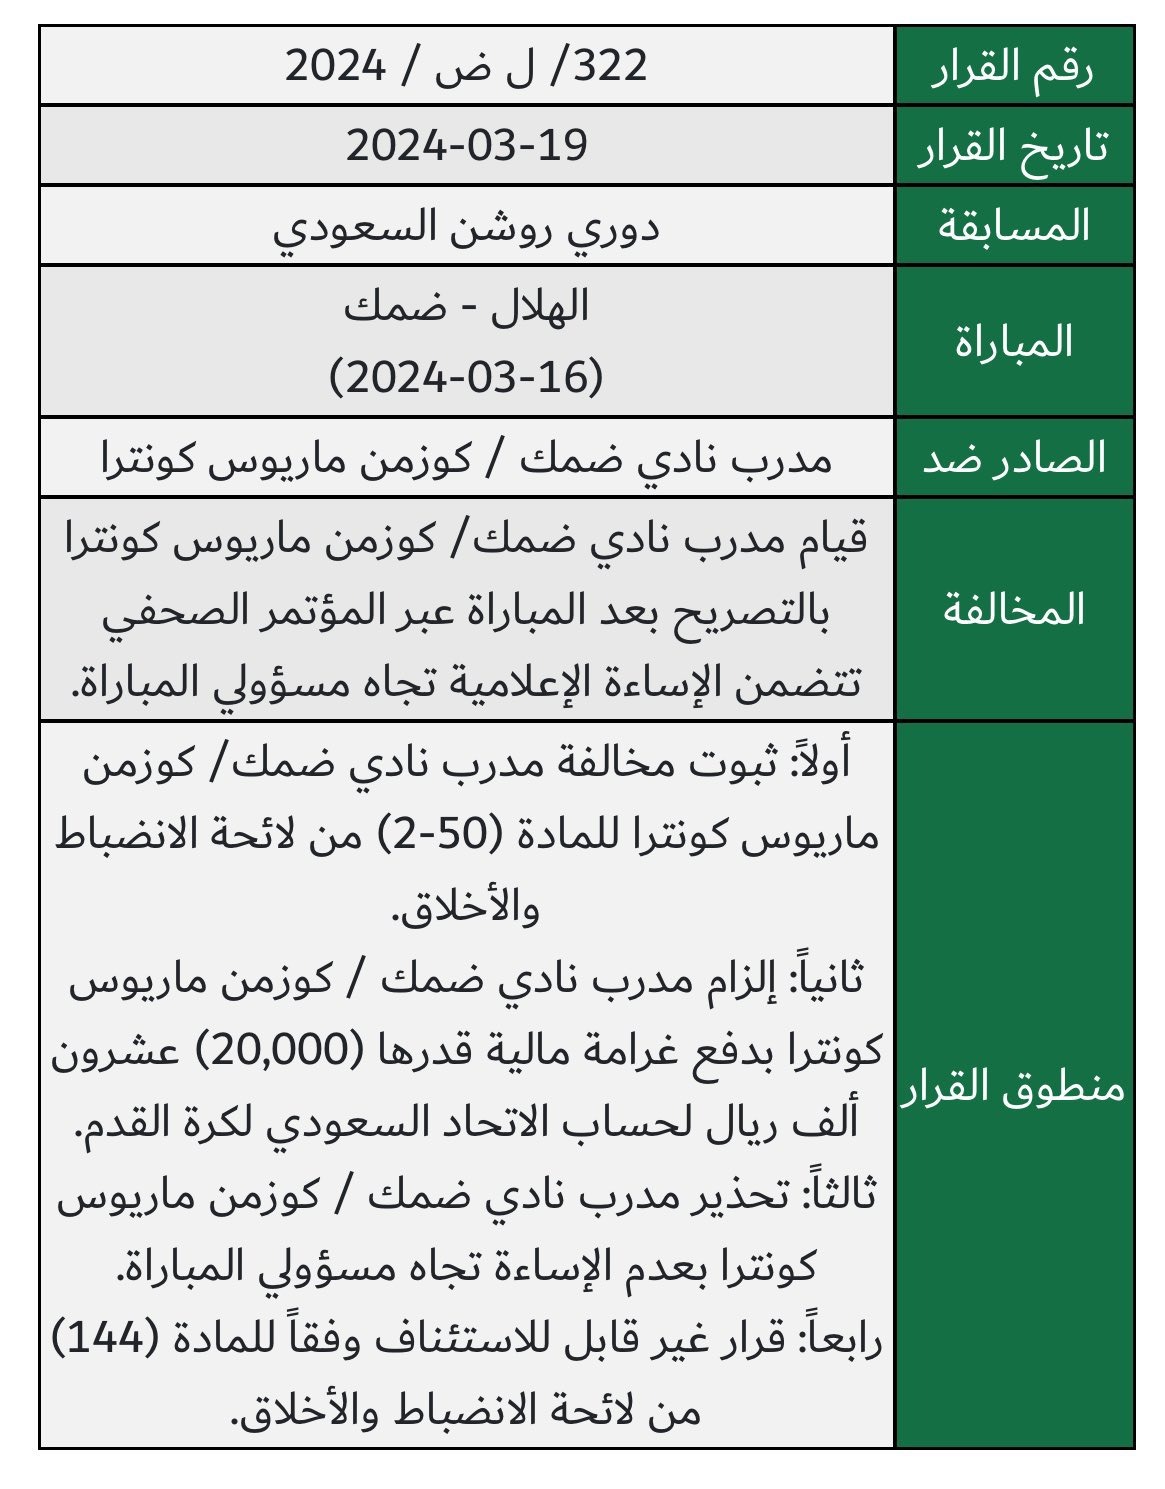 نص بيان عقوبة الاتحاد السعودي في حق مدرب ضمك كوزمين كونترا - 20 مارس 2024